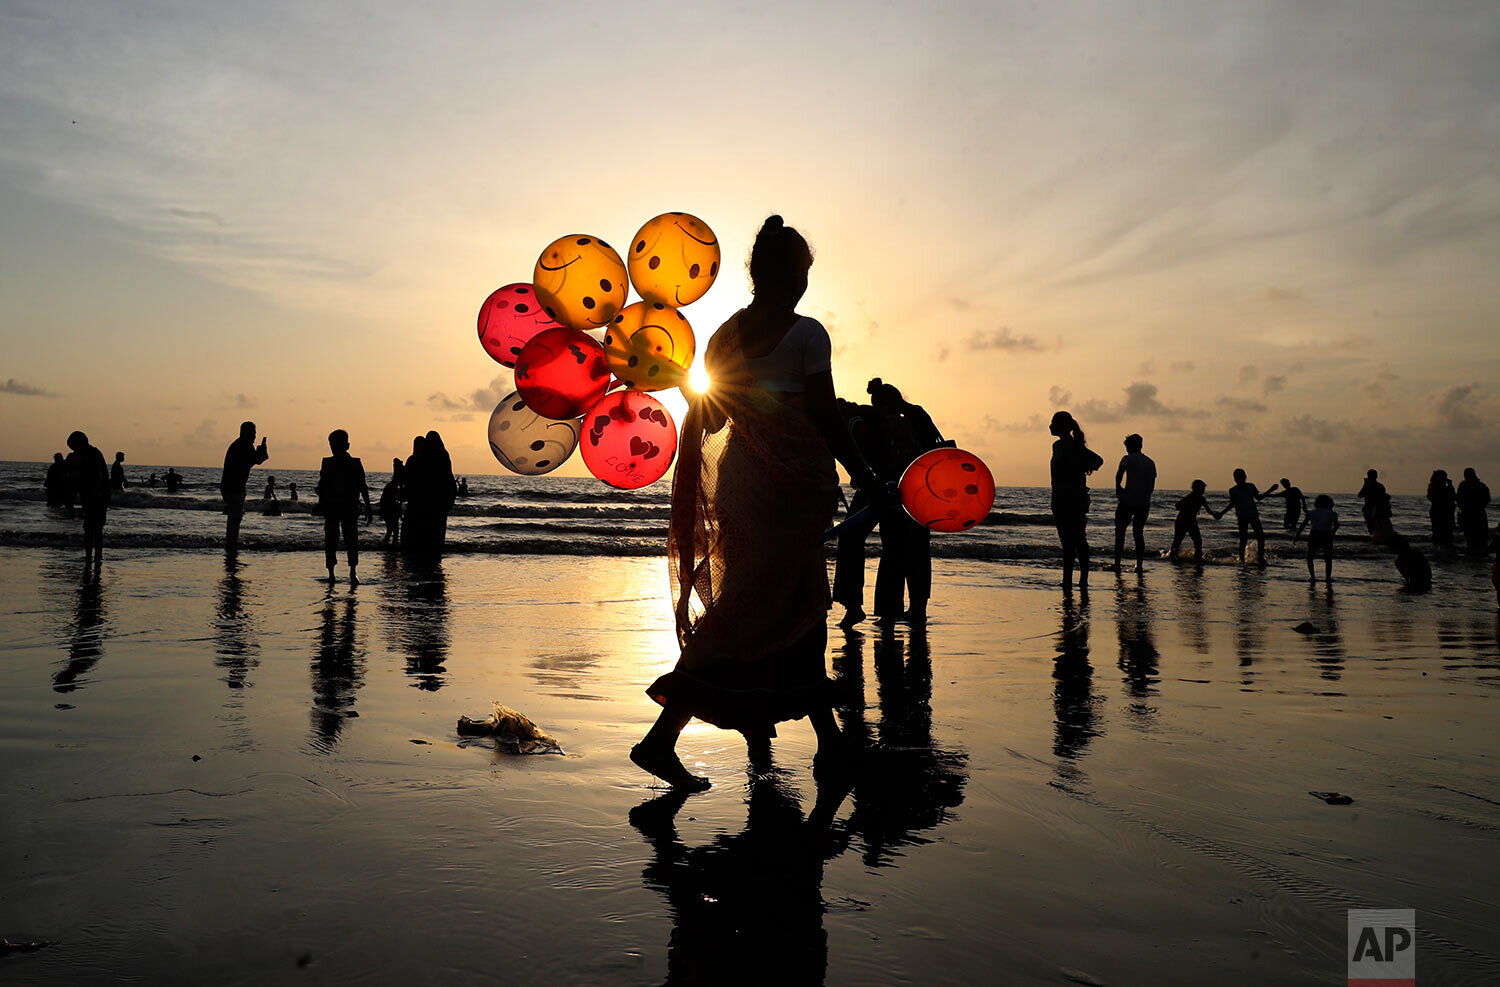  A woman sells balloons at a Juhu beach in Mumbai, India, Tuesday, Aug. 24, 2021. (AP Photo/Rafiq Maqbool) 